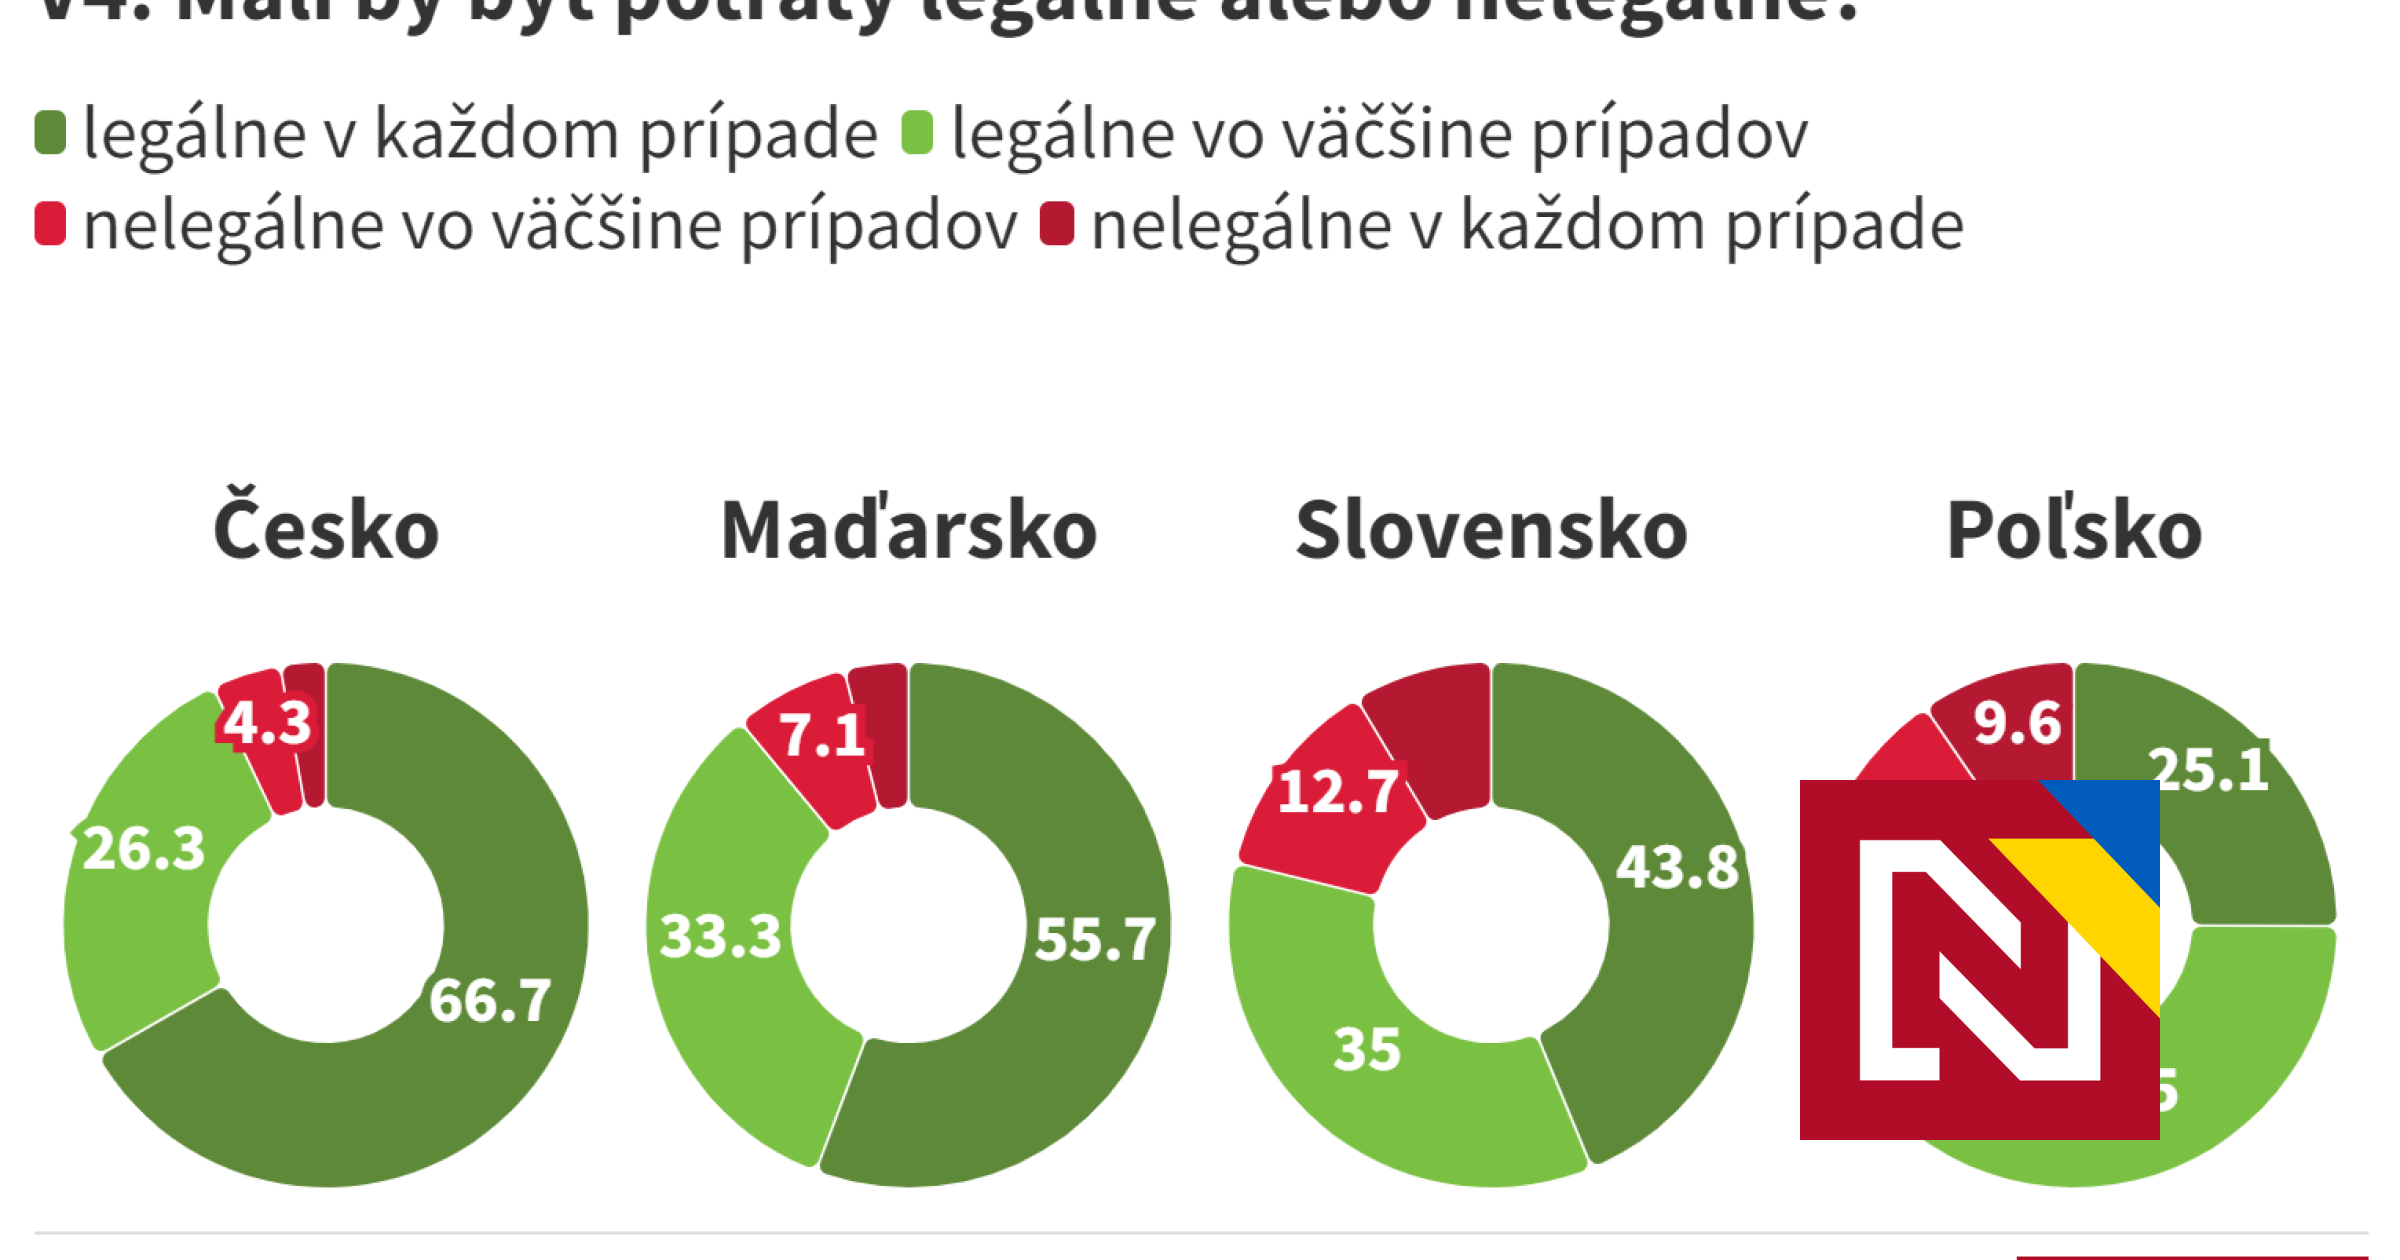 Väčšina ľudí nechce prísne podmienky pre potraty (porovnanie s Českom, Maďarskom a Poľskom)